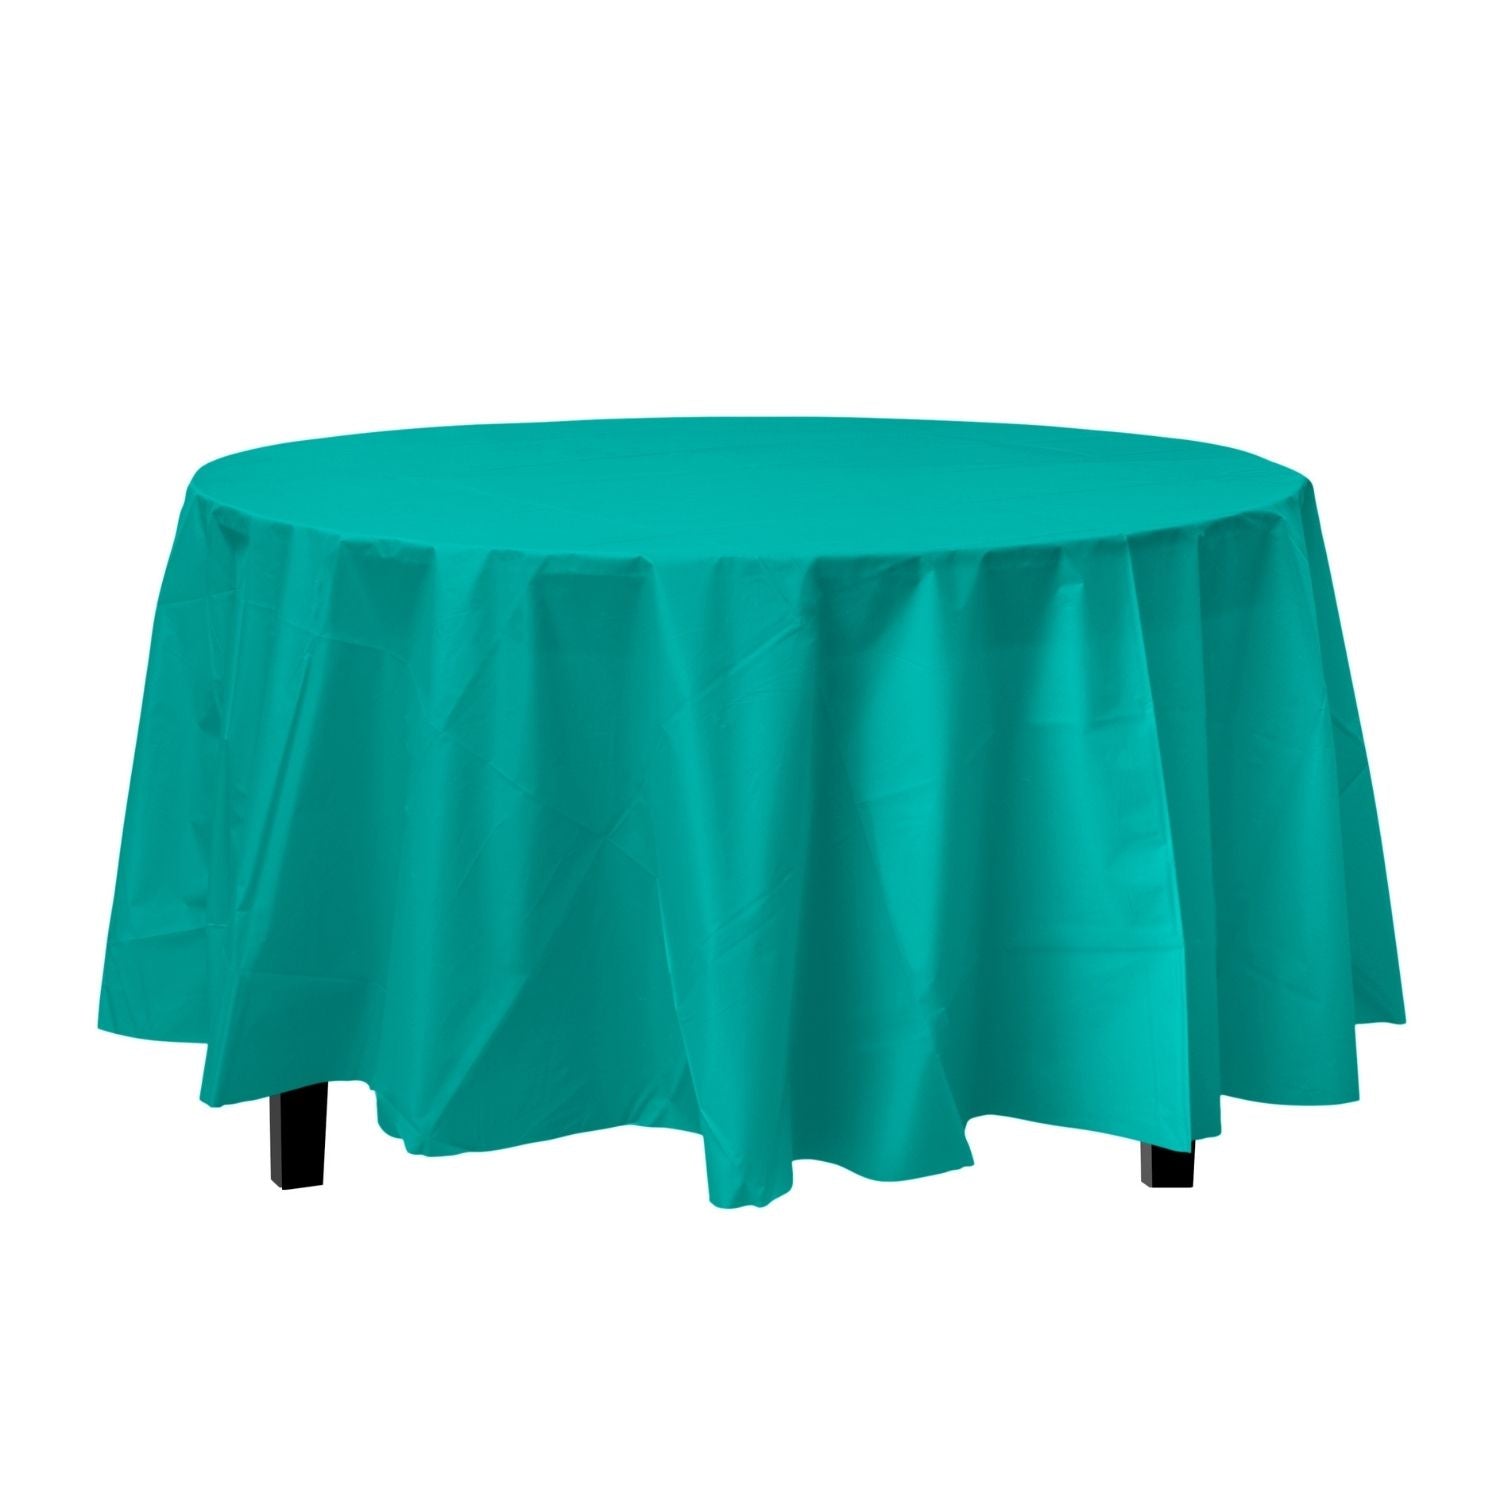 Premium Round Teal Plastic Tablecloth | 96 Count